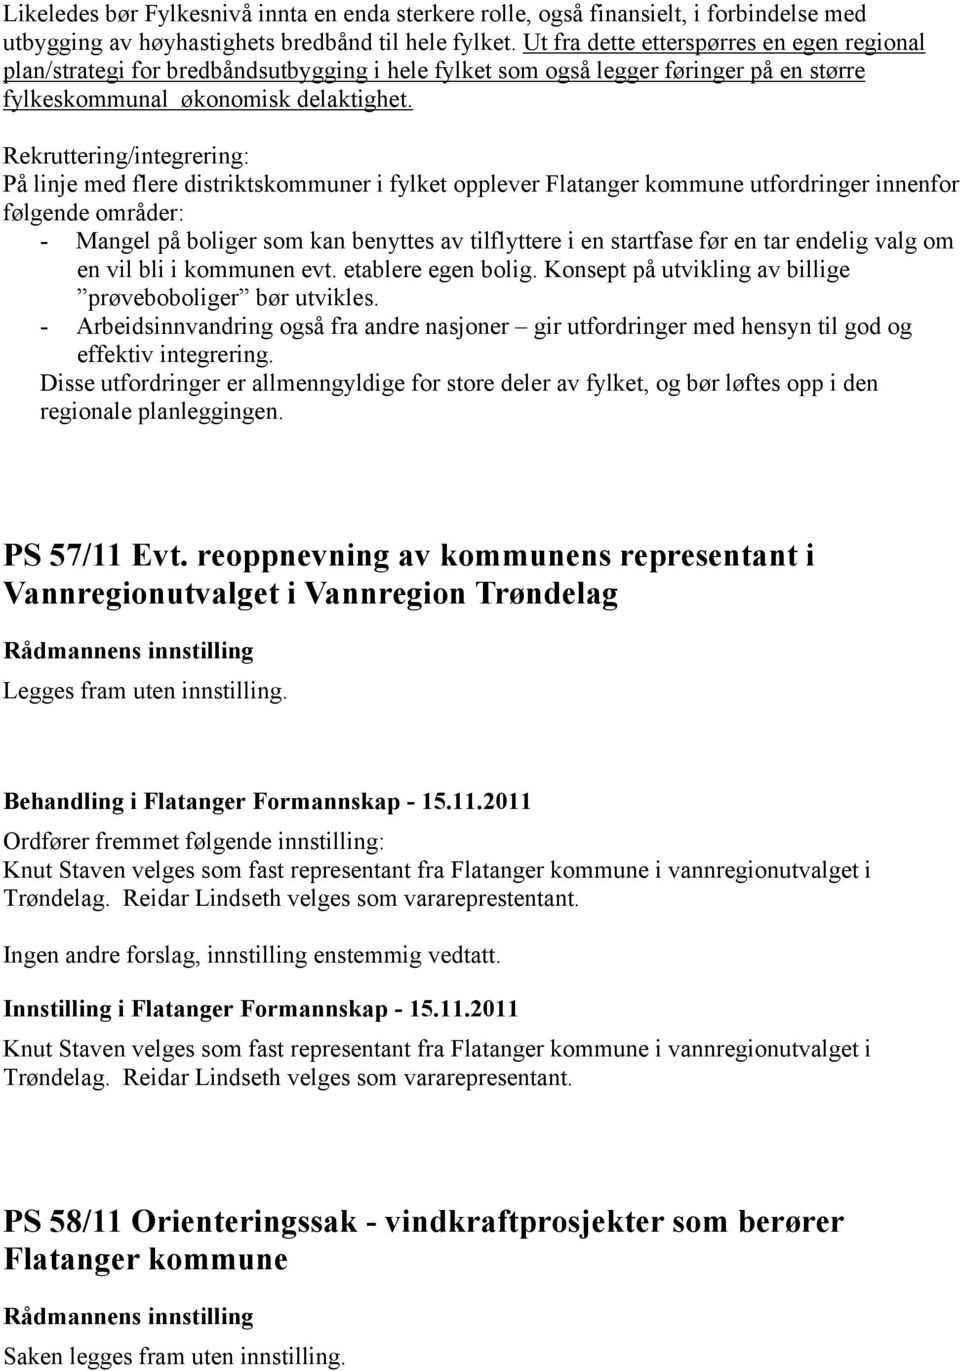 Rekruttering/integrering: På linje med flere distriktskommuner i fylket opplever Flatanger kommune utfordringer innenfor følgende områder: - Mangel på boliger som kan benyttes av tilflyttere i en